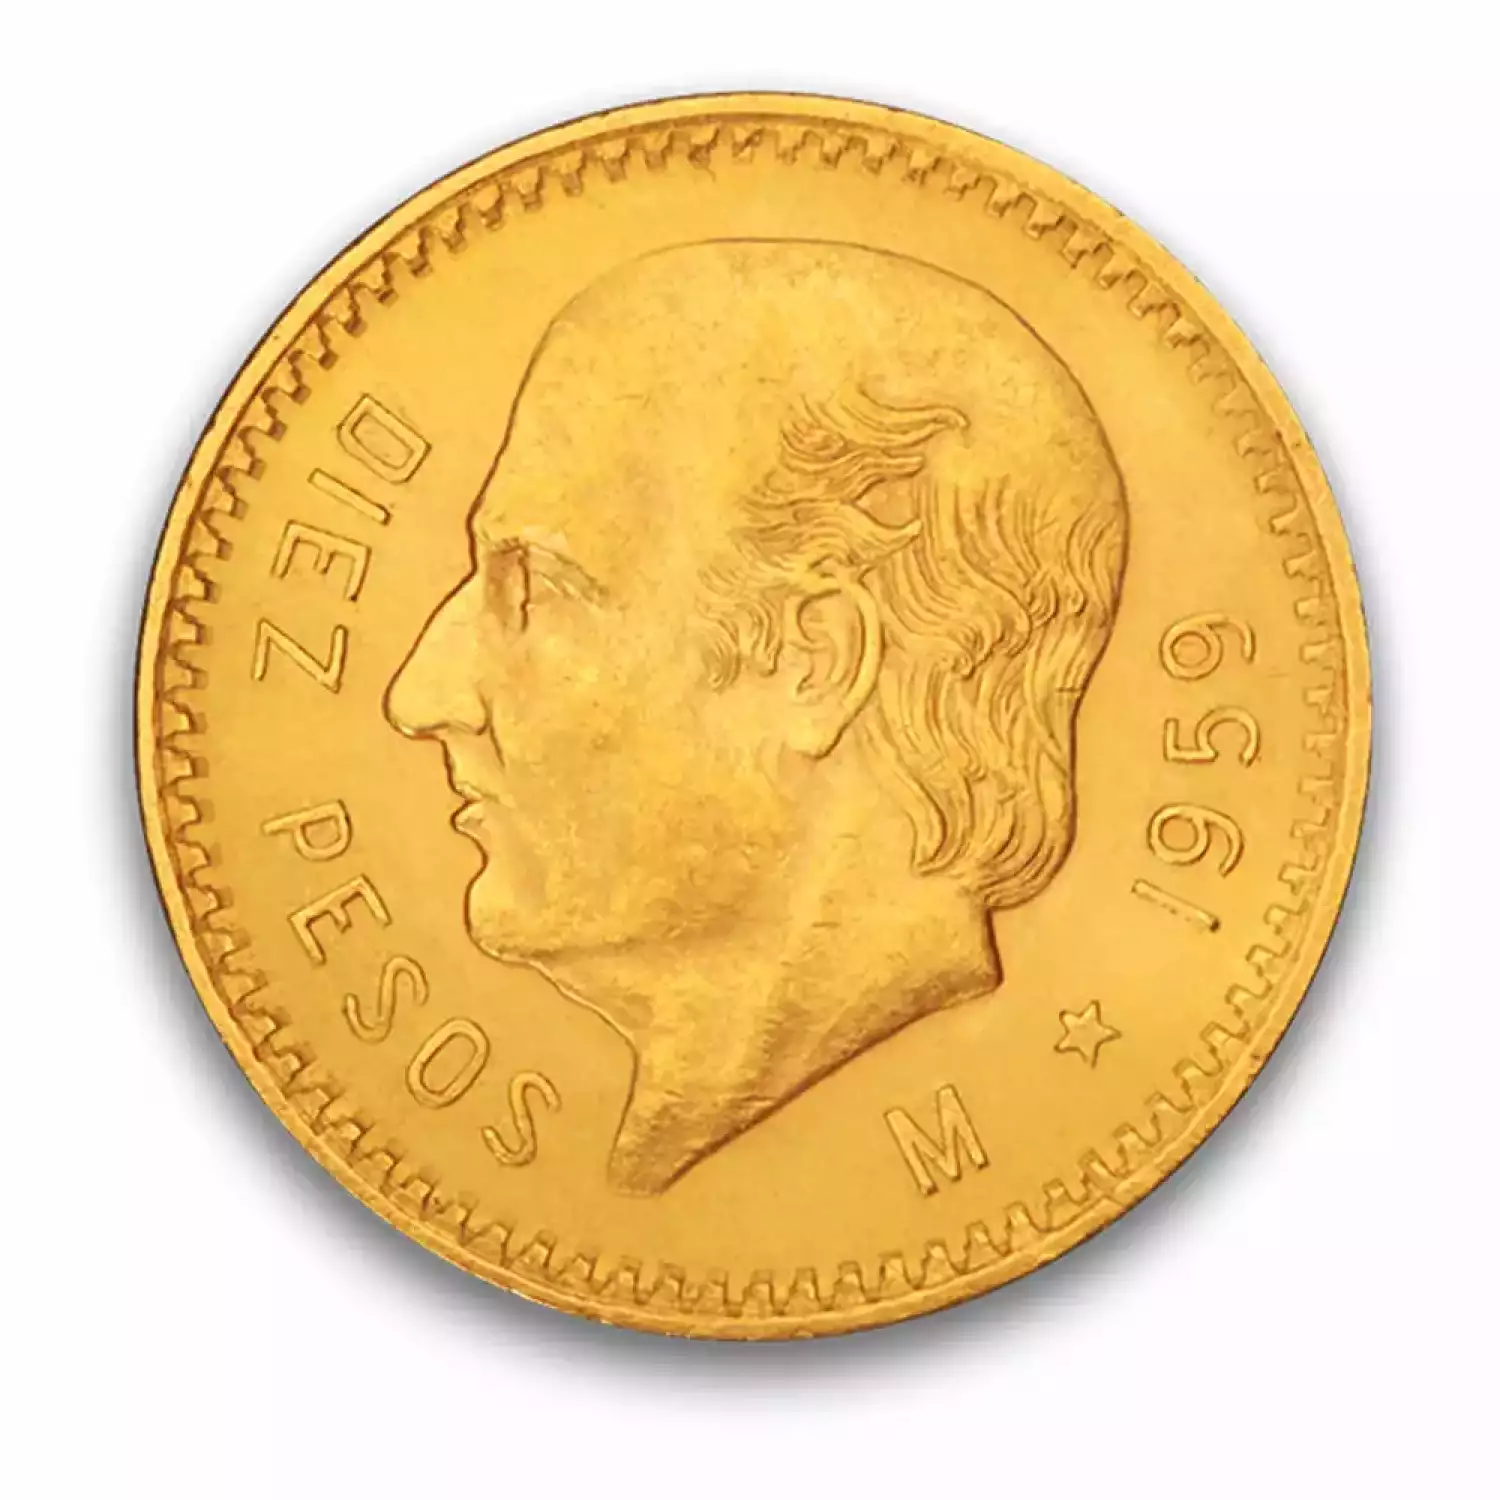 Mexico 10 Peso Gold Coin 